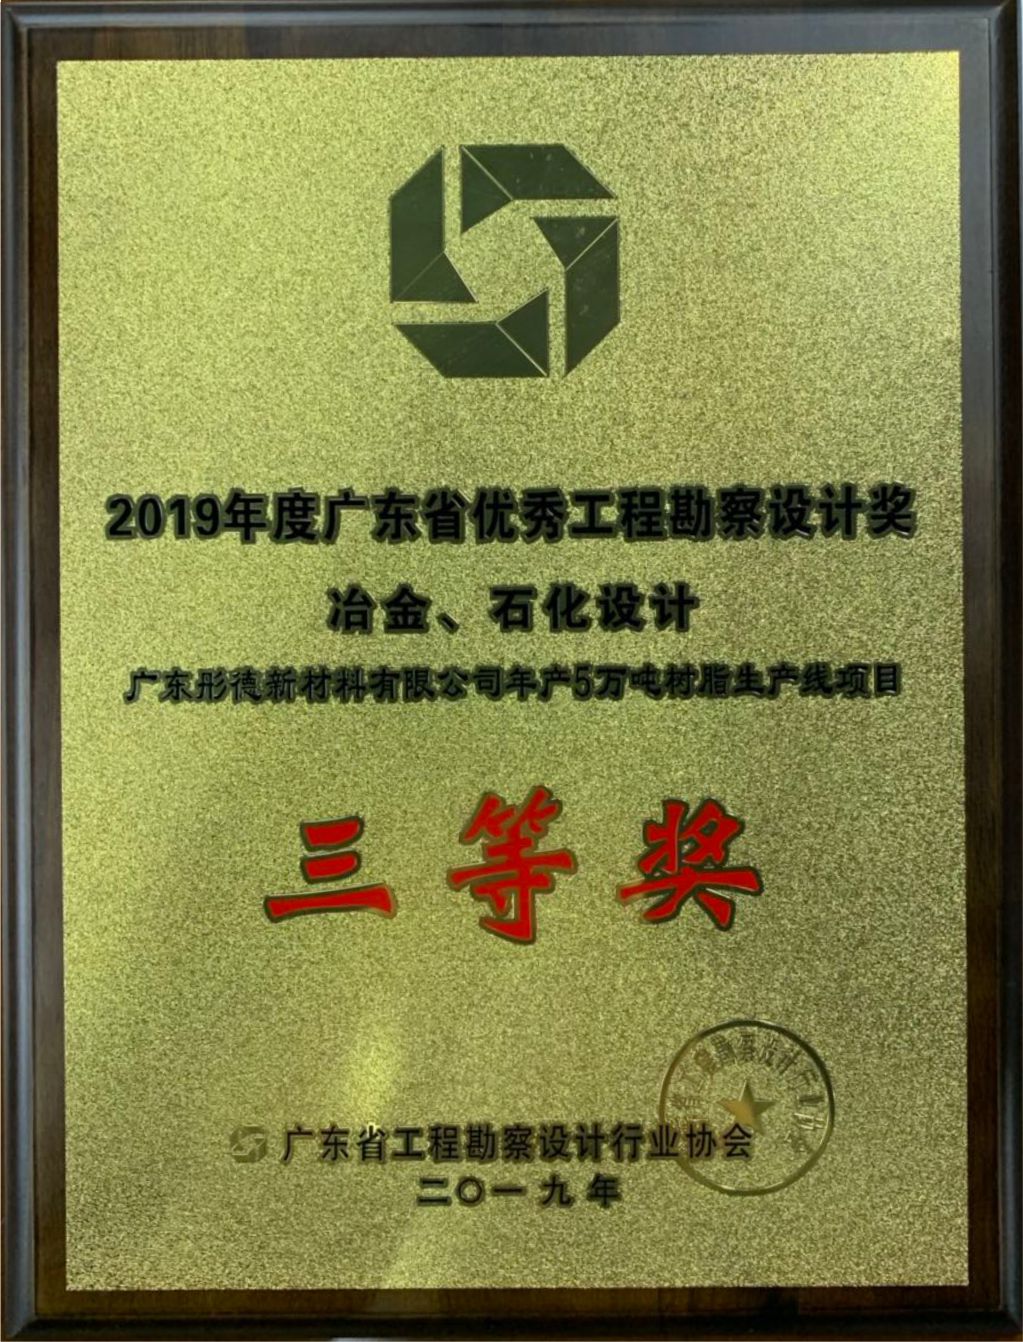 2019年度廣東省優秀工程勘察設計獎